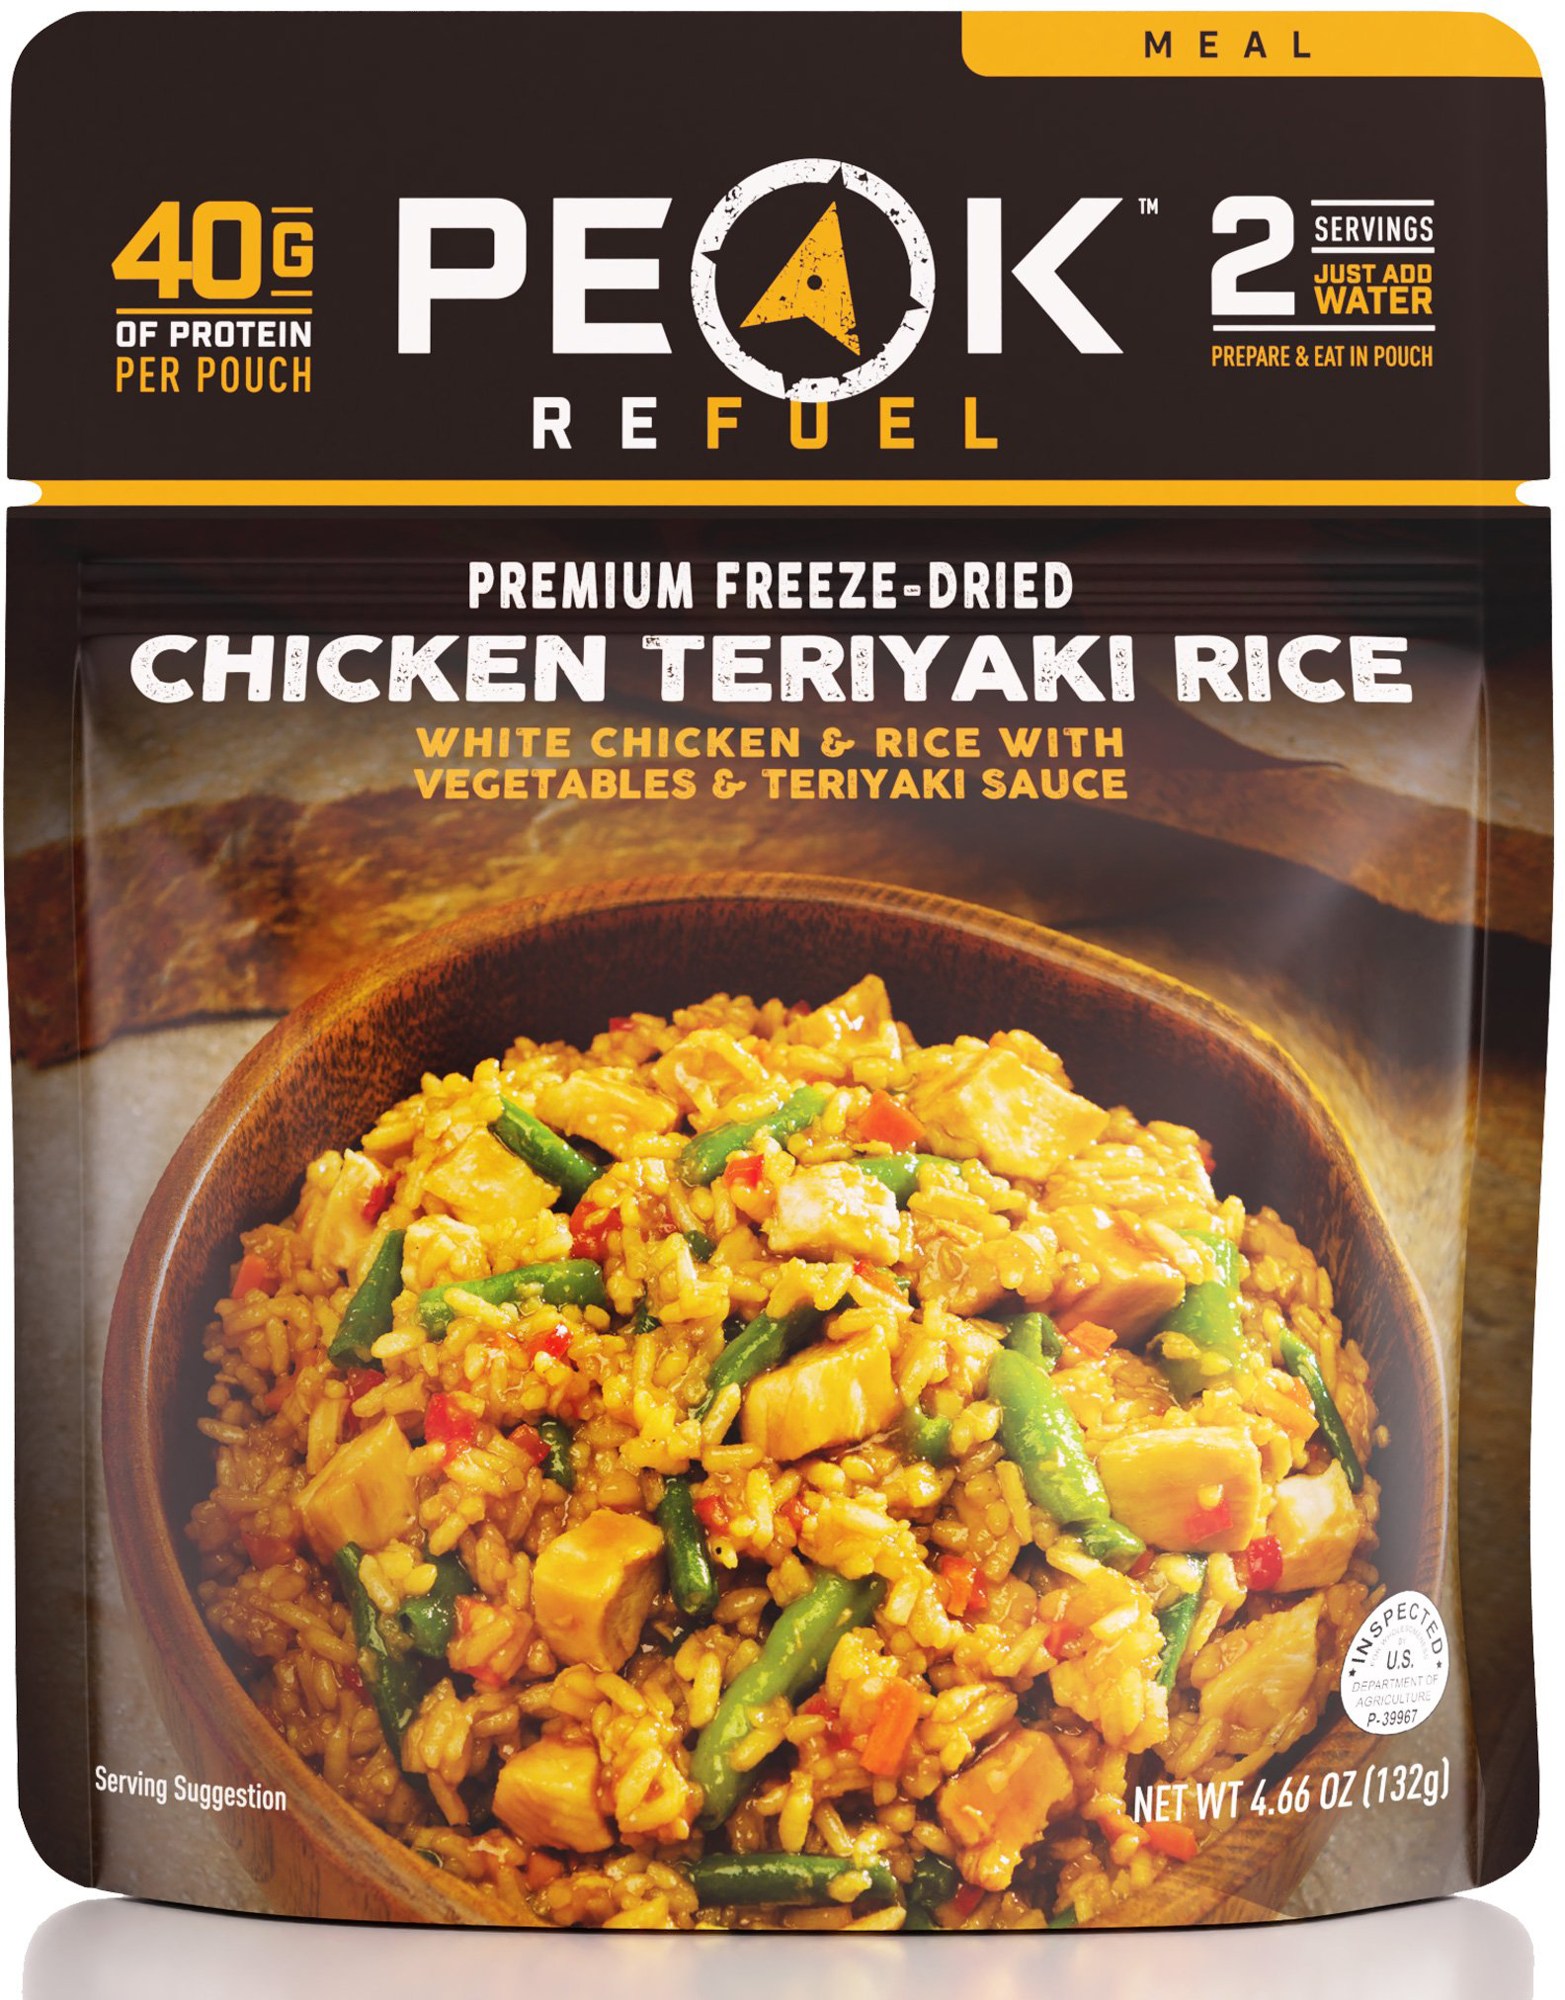 Курица с рисом Терияки – 2 порции PEAK REFUEL запеченный ролл с курицей терияки 12 шт